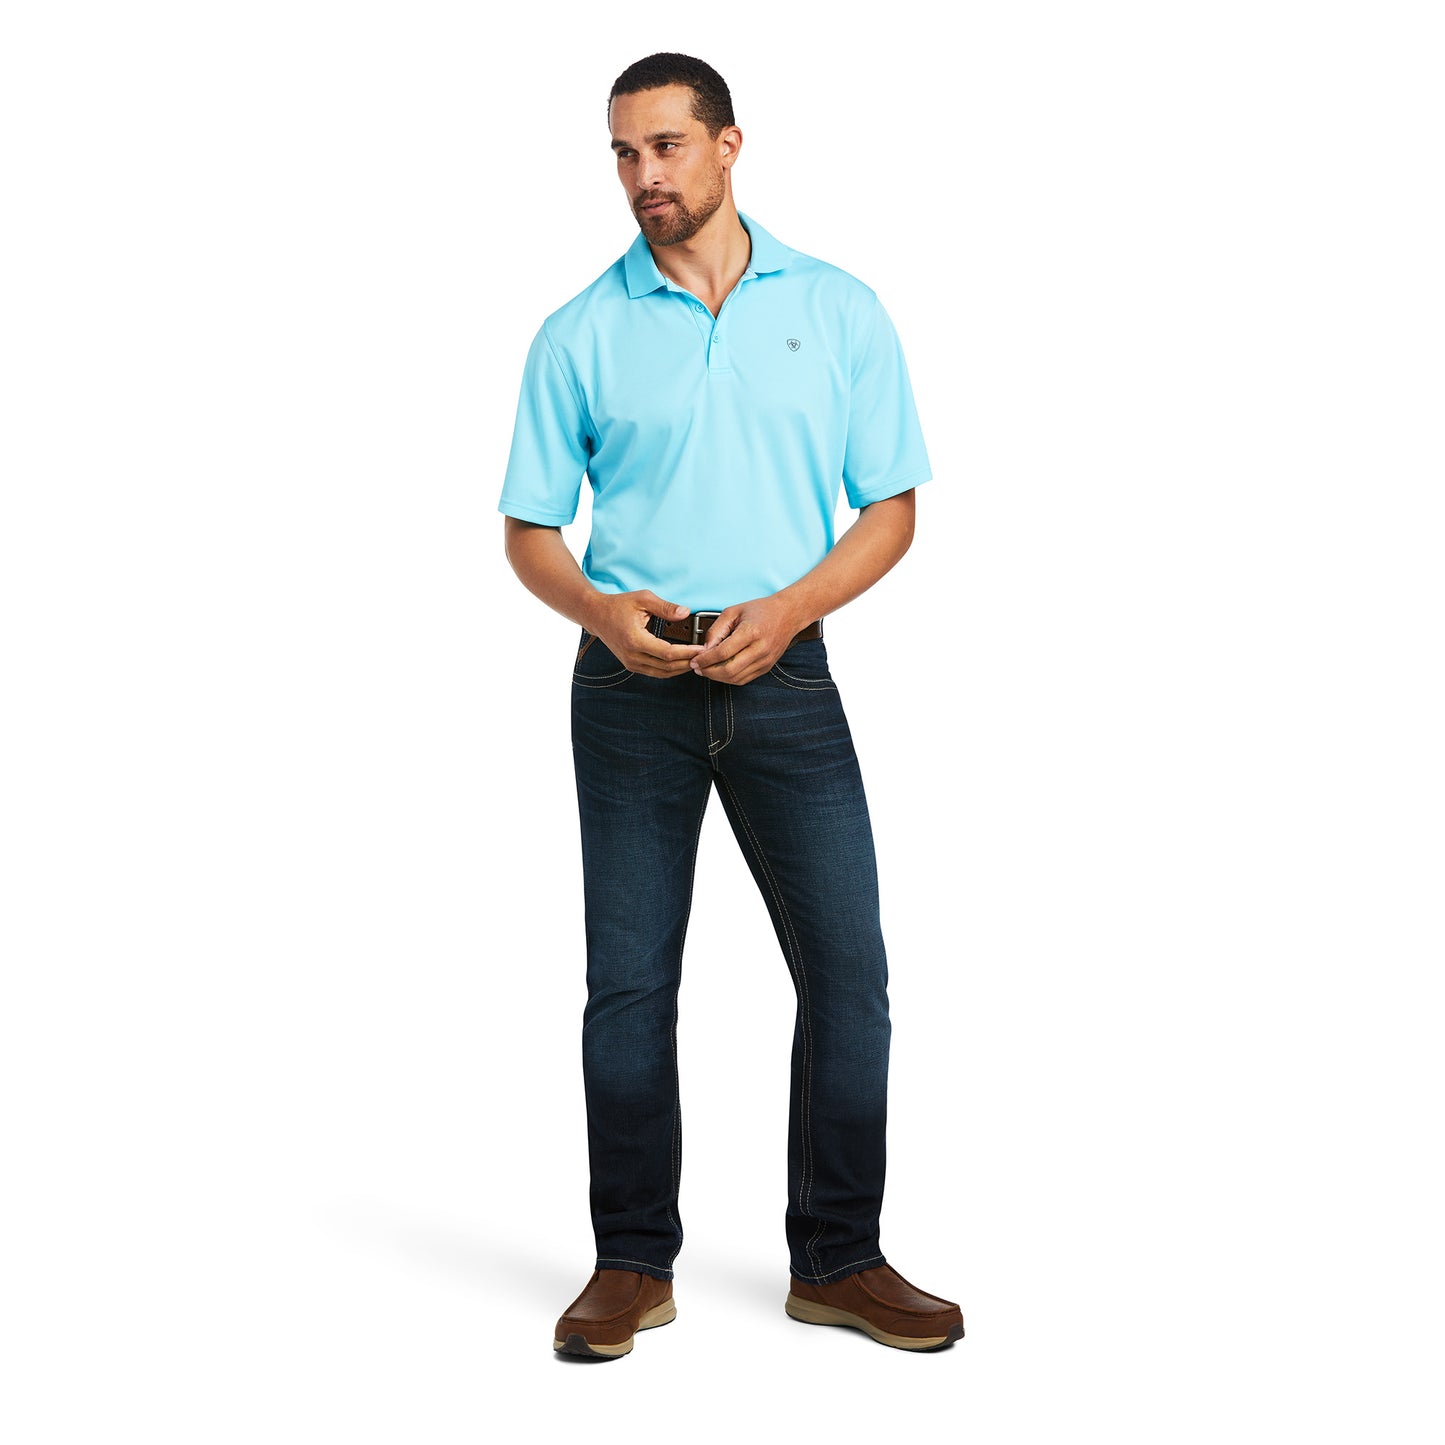 Ariat Men's Tek Polo Turquoise Short Sleeve Shirt 10039381